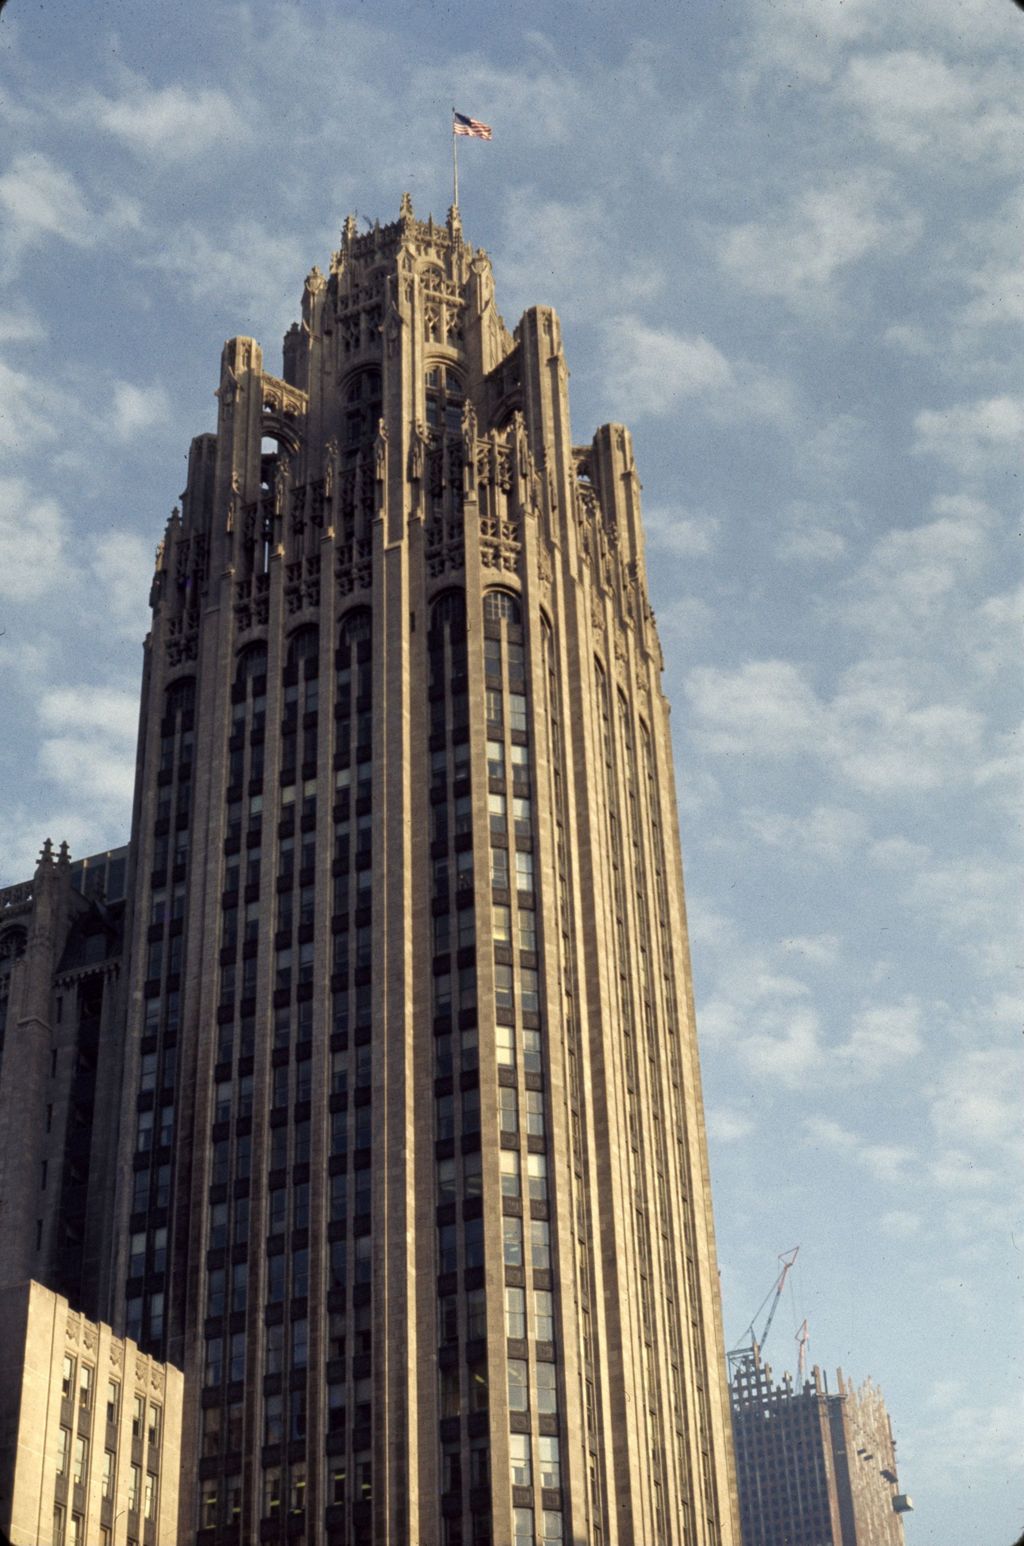 Chicago Tribune Building